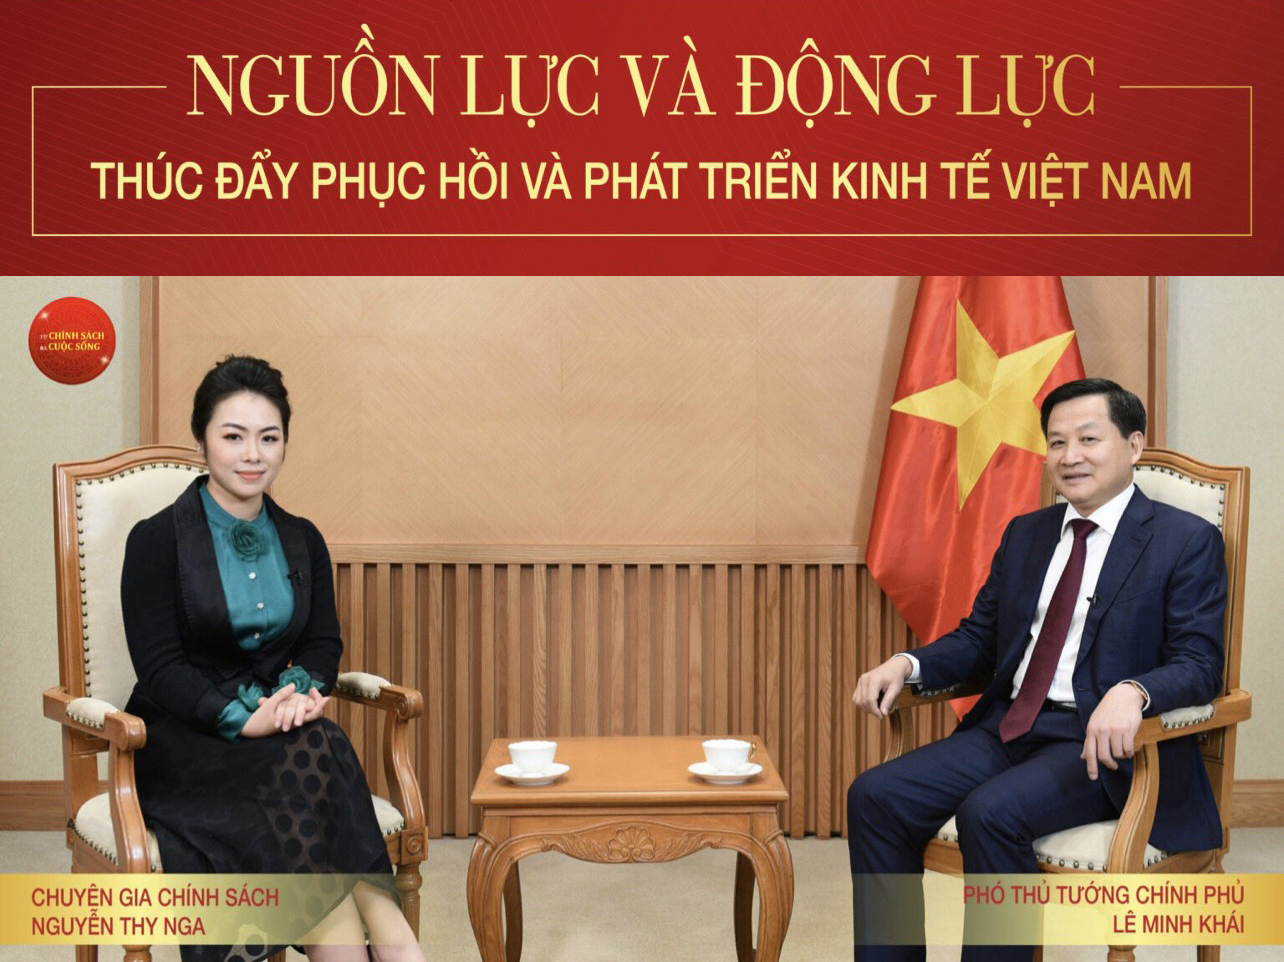 Phó Thủ tướng Chính Phủ Lê Minh Khái: Nguồn lực – Động lực thúc đẩy phục hồi và phát triển kinh tế Việt Nam